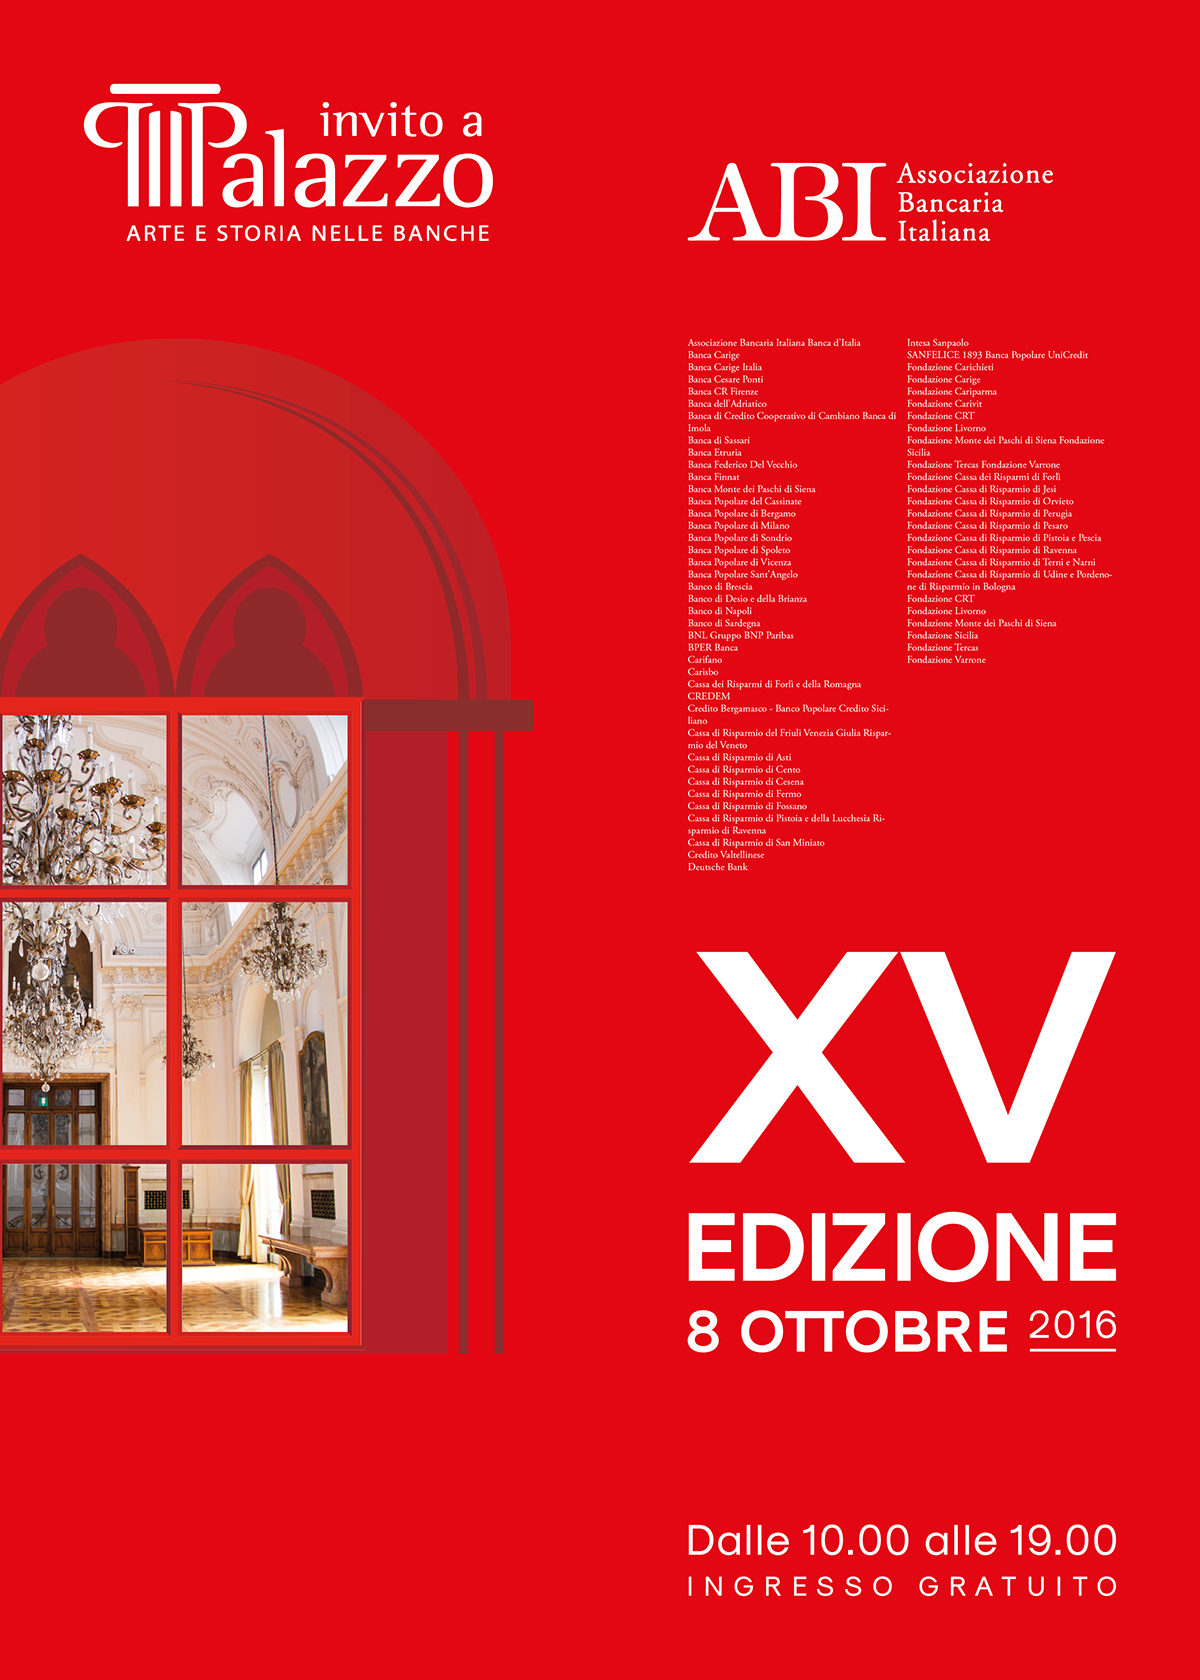 abi Invito a Palzzo brochure design event identity Edizione 2016 Design Inspiration cultural event guide book Poster Design graphic design  book design event marketing